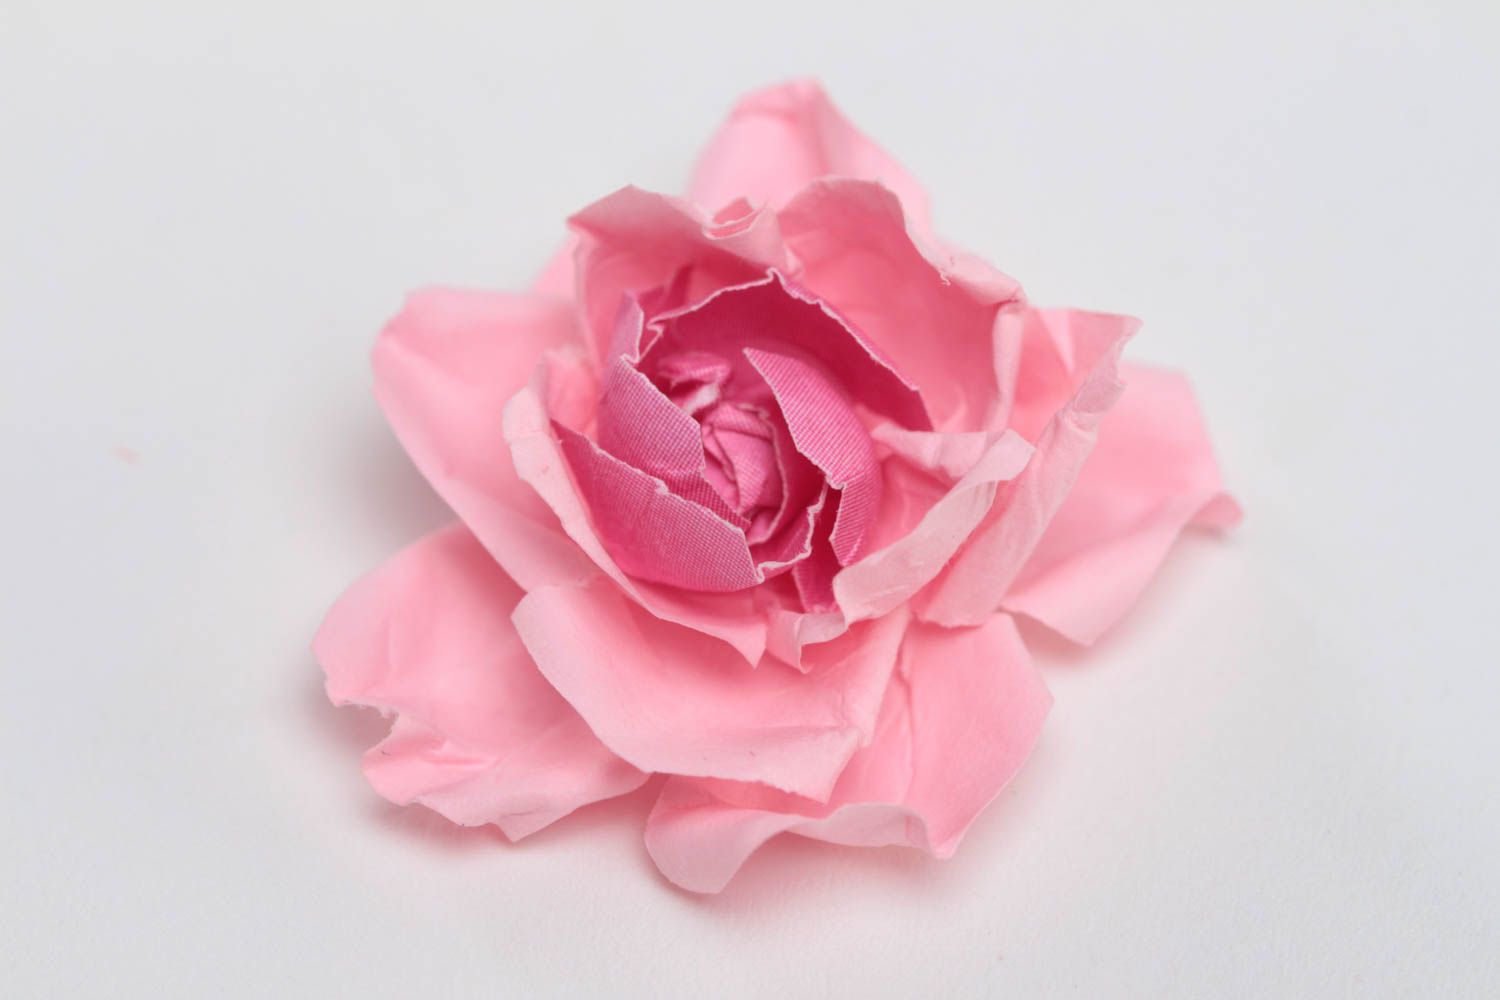 Милый цветок из бумаги для создания изделий в технике скрапбукинг хэнд мэйд фото 2